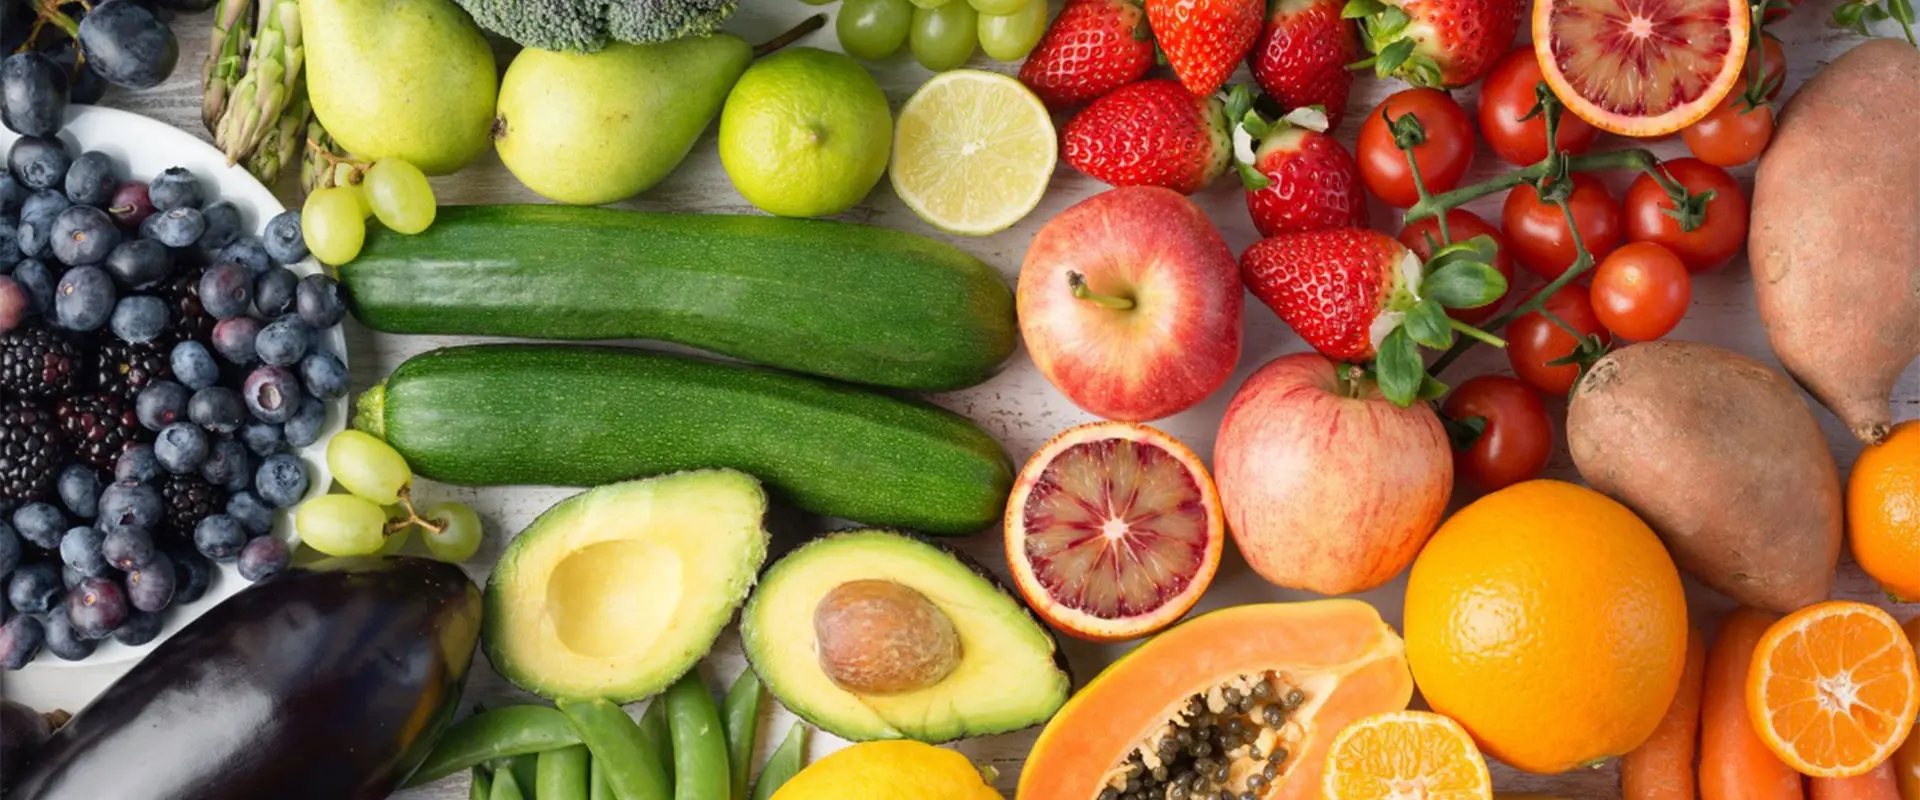 Organisches Obst-und Gemüse pulver